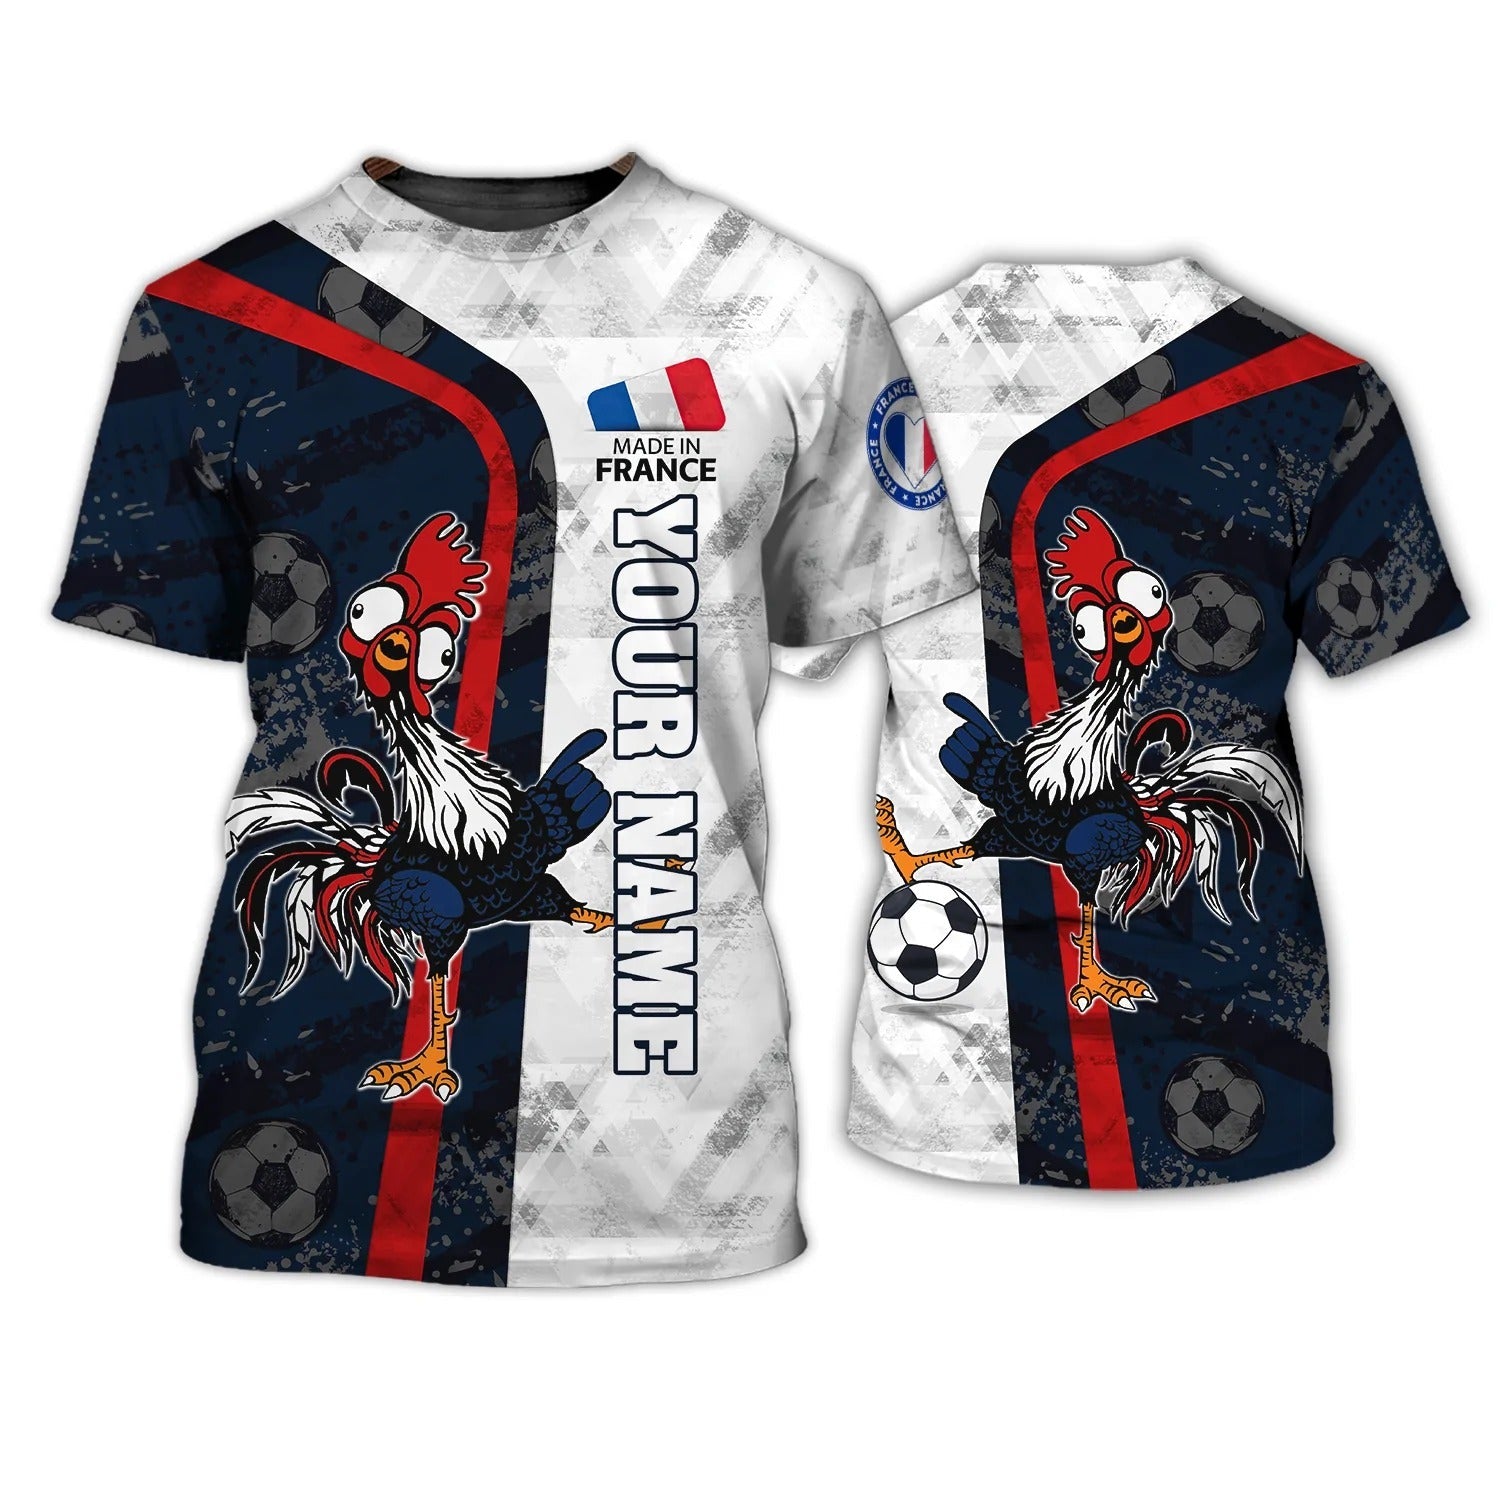 Rooster France Football T Shirt For Men Women/ Support France Football Team Shirt/ France Fan Gift